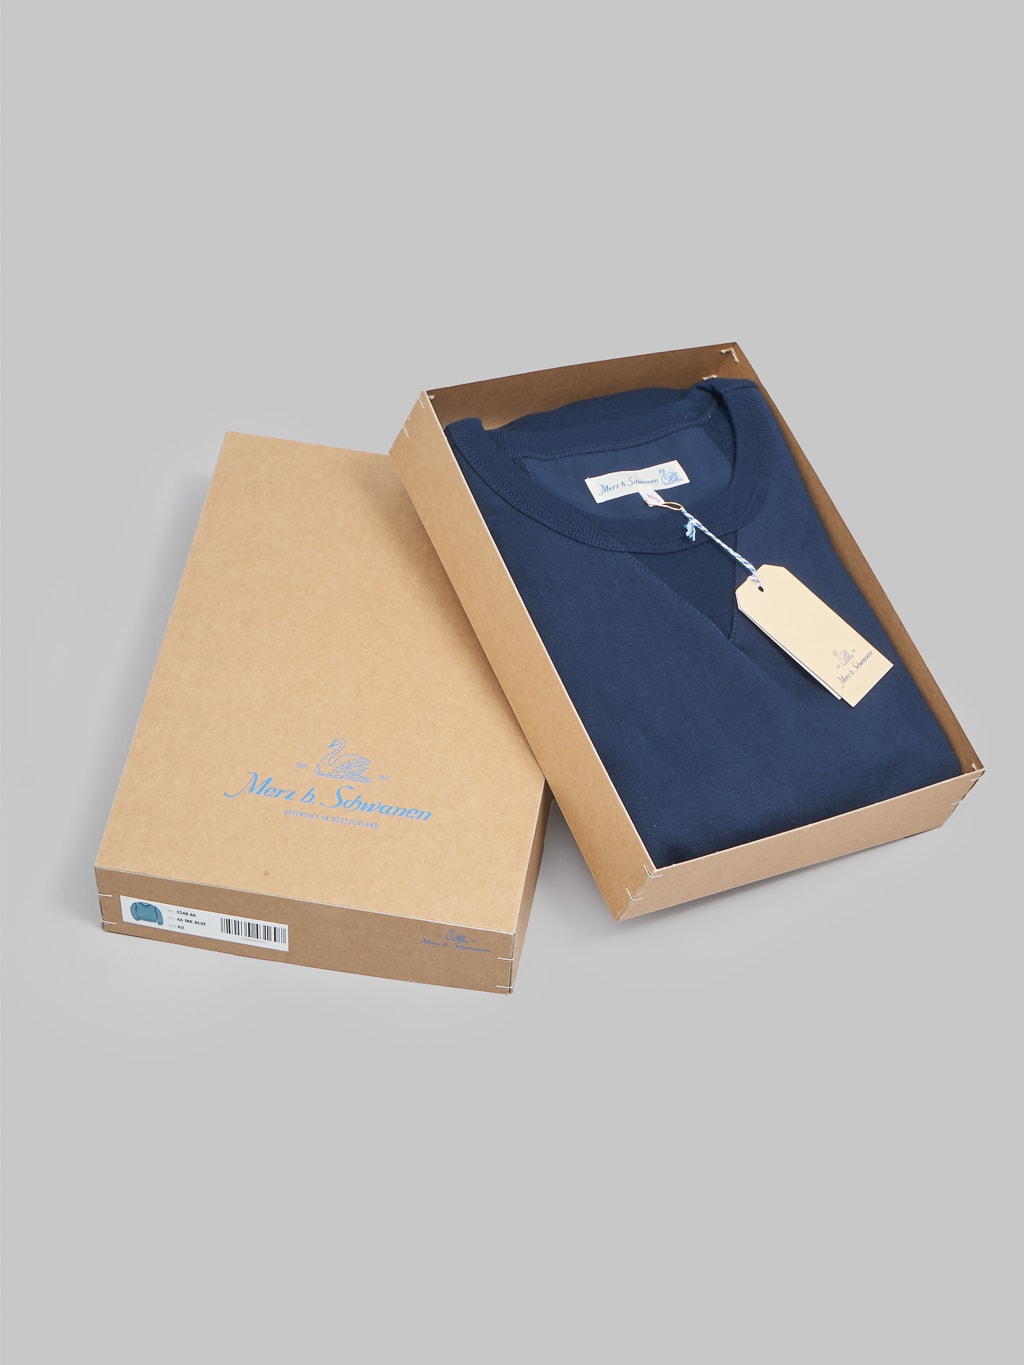 Merz B Schwanen loopwheeled swearshirt heavy ink blue packaging box